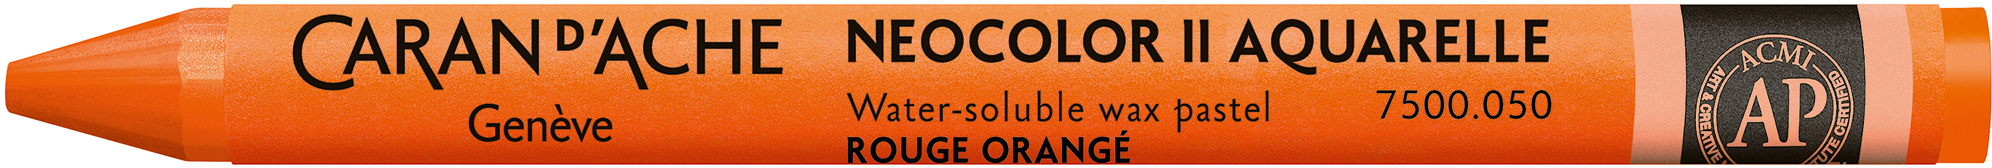 CARAN D'ACHE Crayons de cire Neocolor II 7500.050 rouge-orange rouge-orange